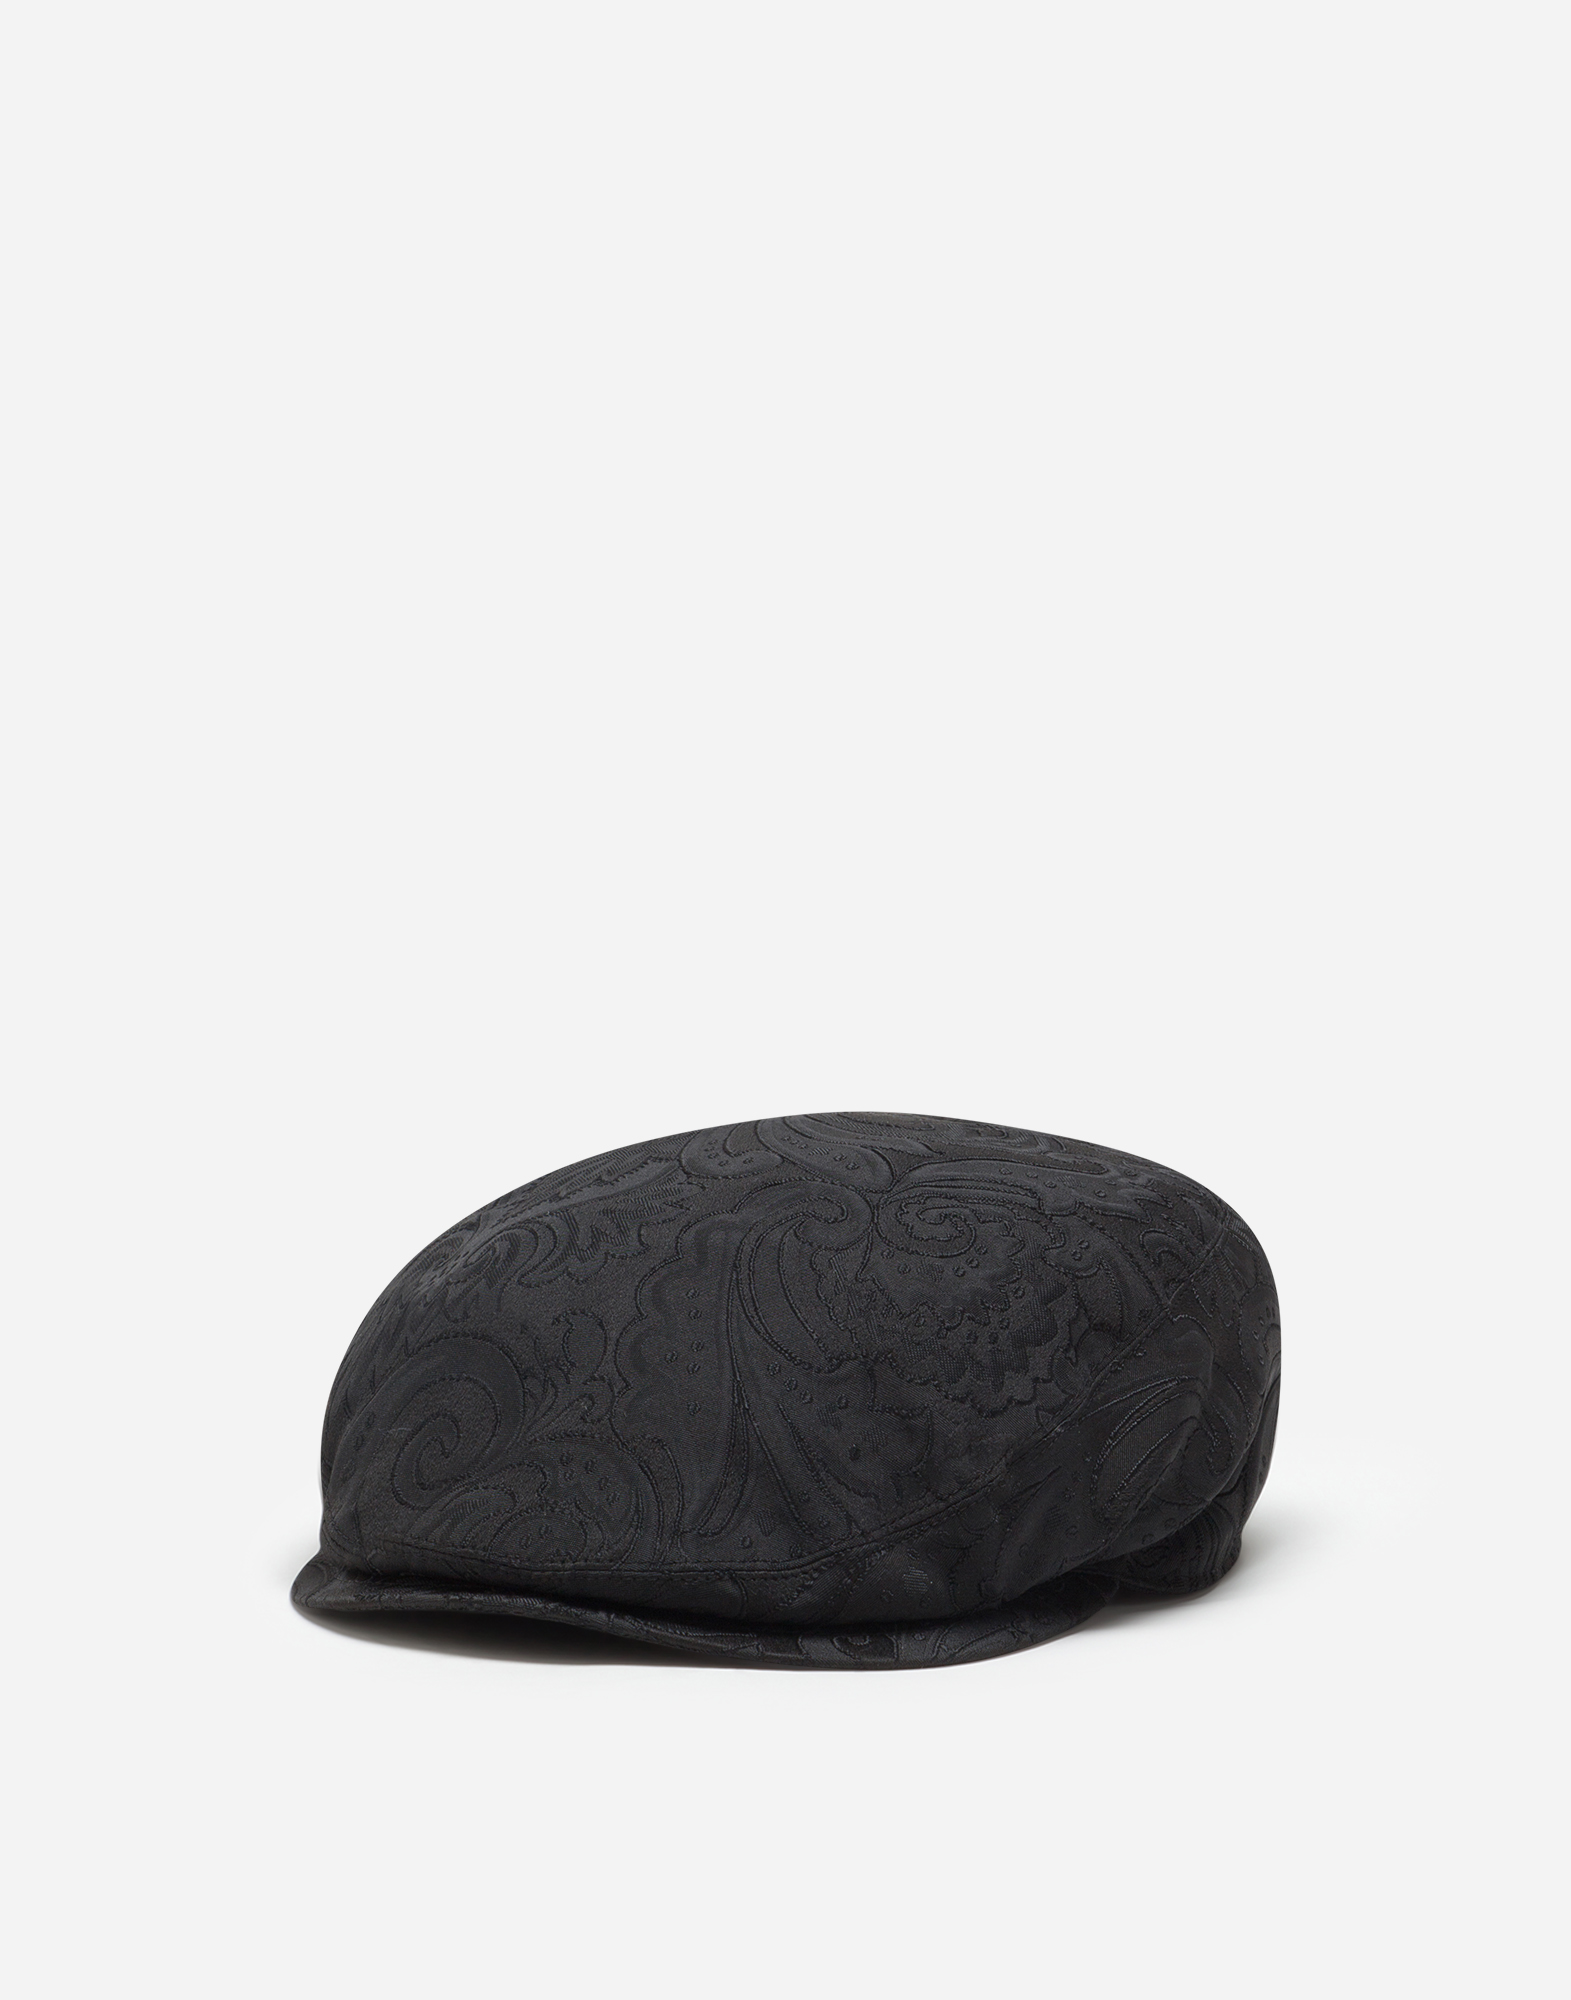 ドルガバ ハンチング 帽子 コットン ロゴ ブラック ホワイト 58